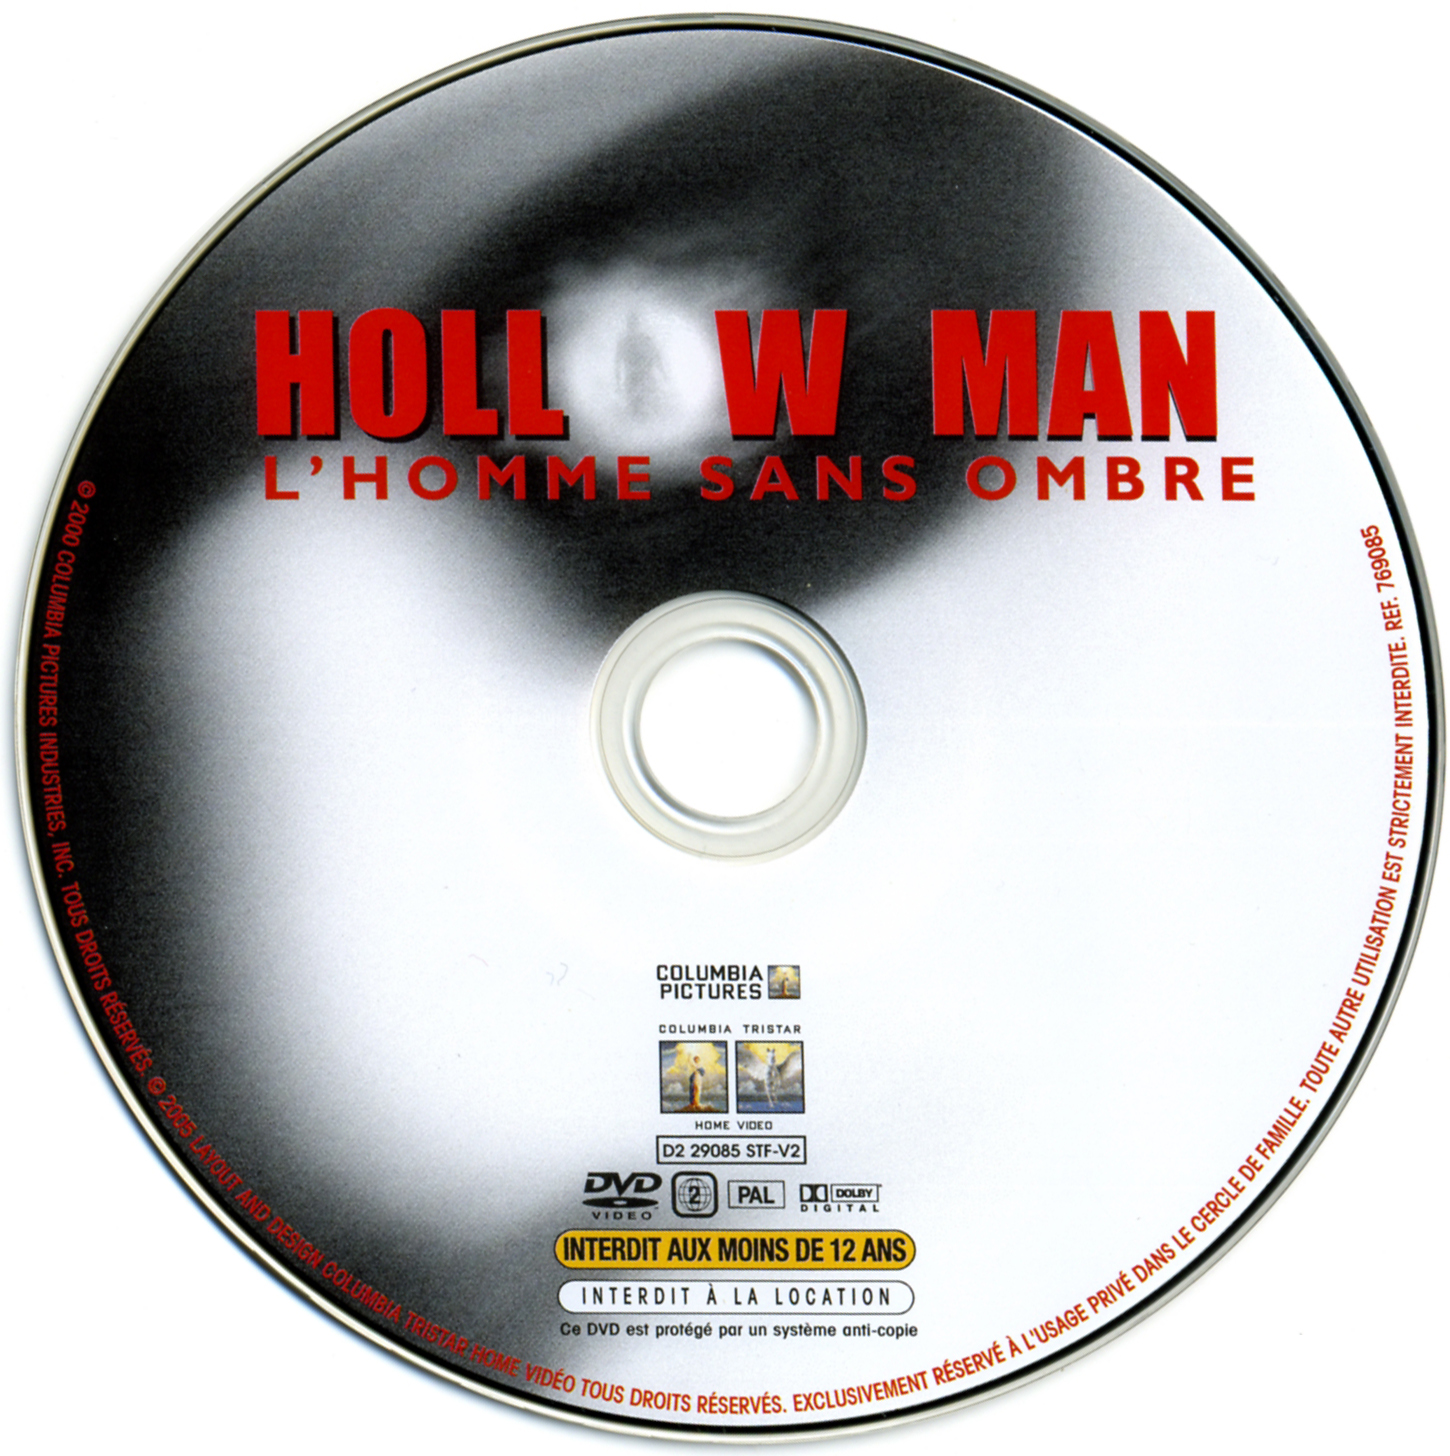 Hollow man v3